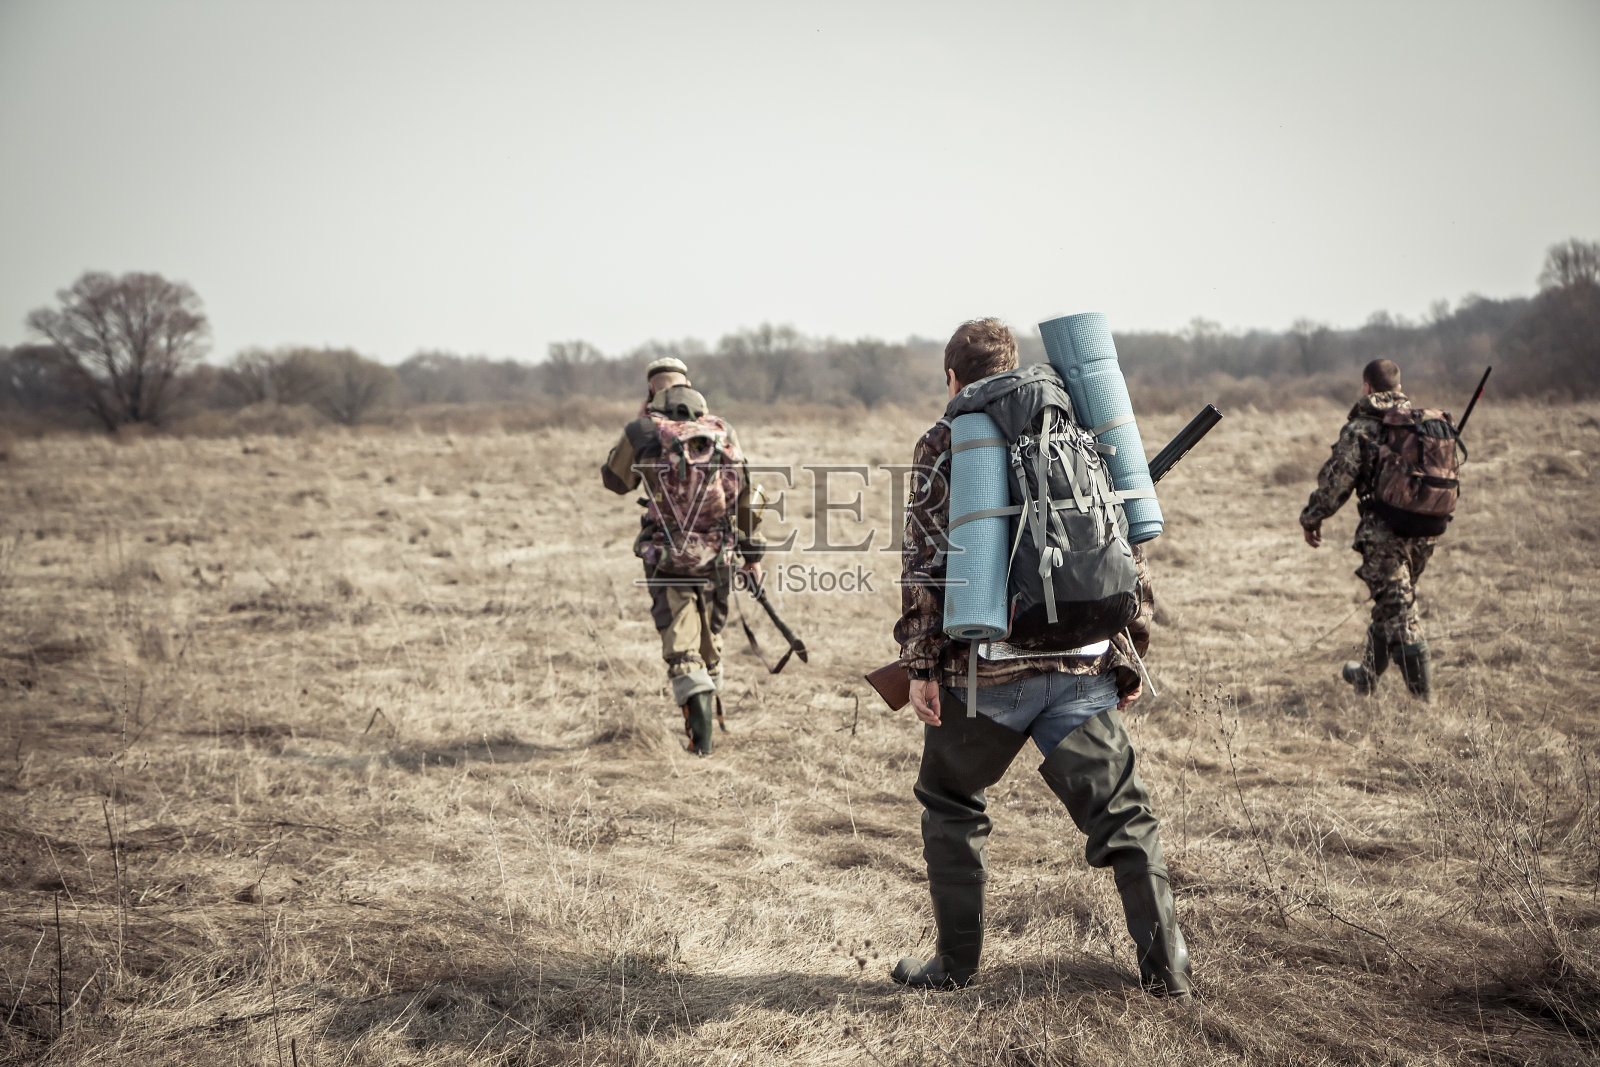 狩猎场景:一群猎人背着背包，背着猎枪，在阴天的狩猎季节穿过乡间田野照片摄影图片